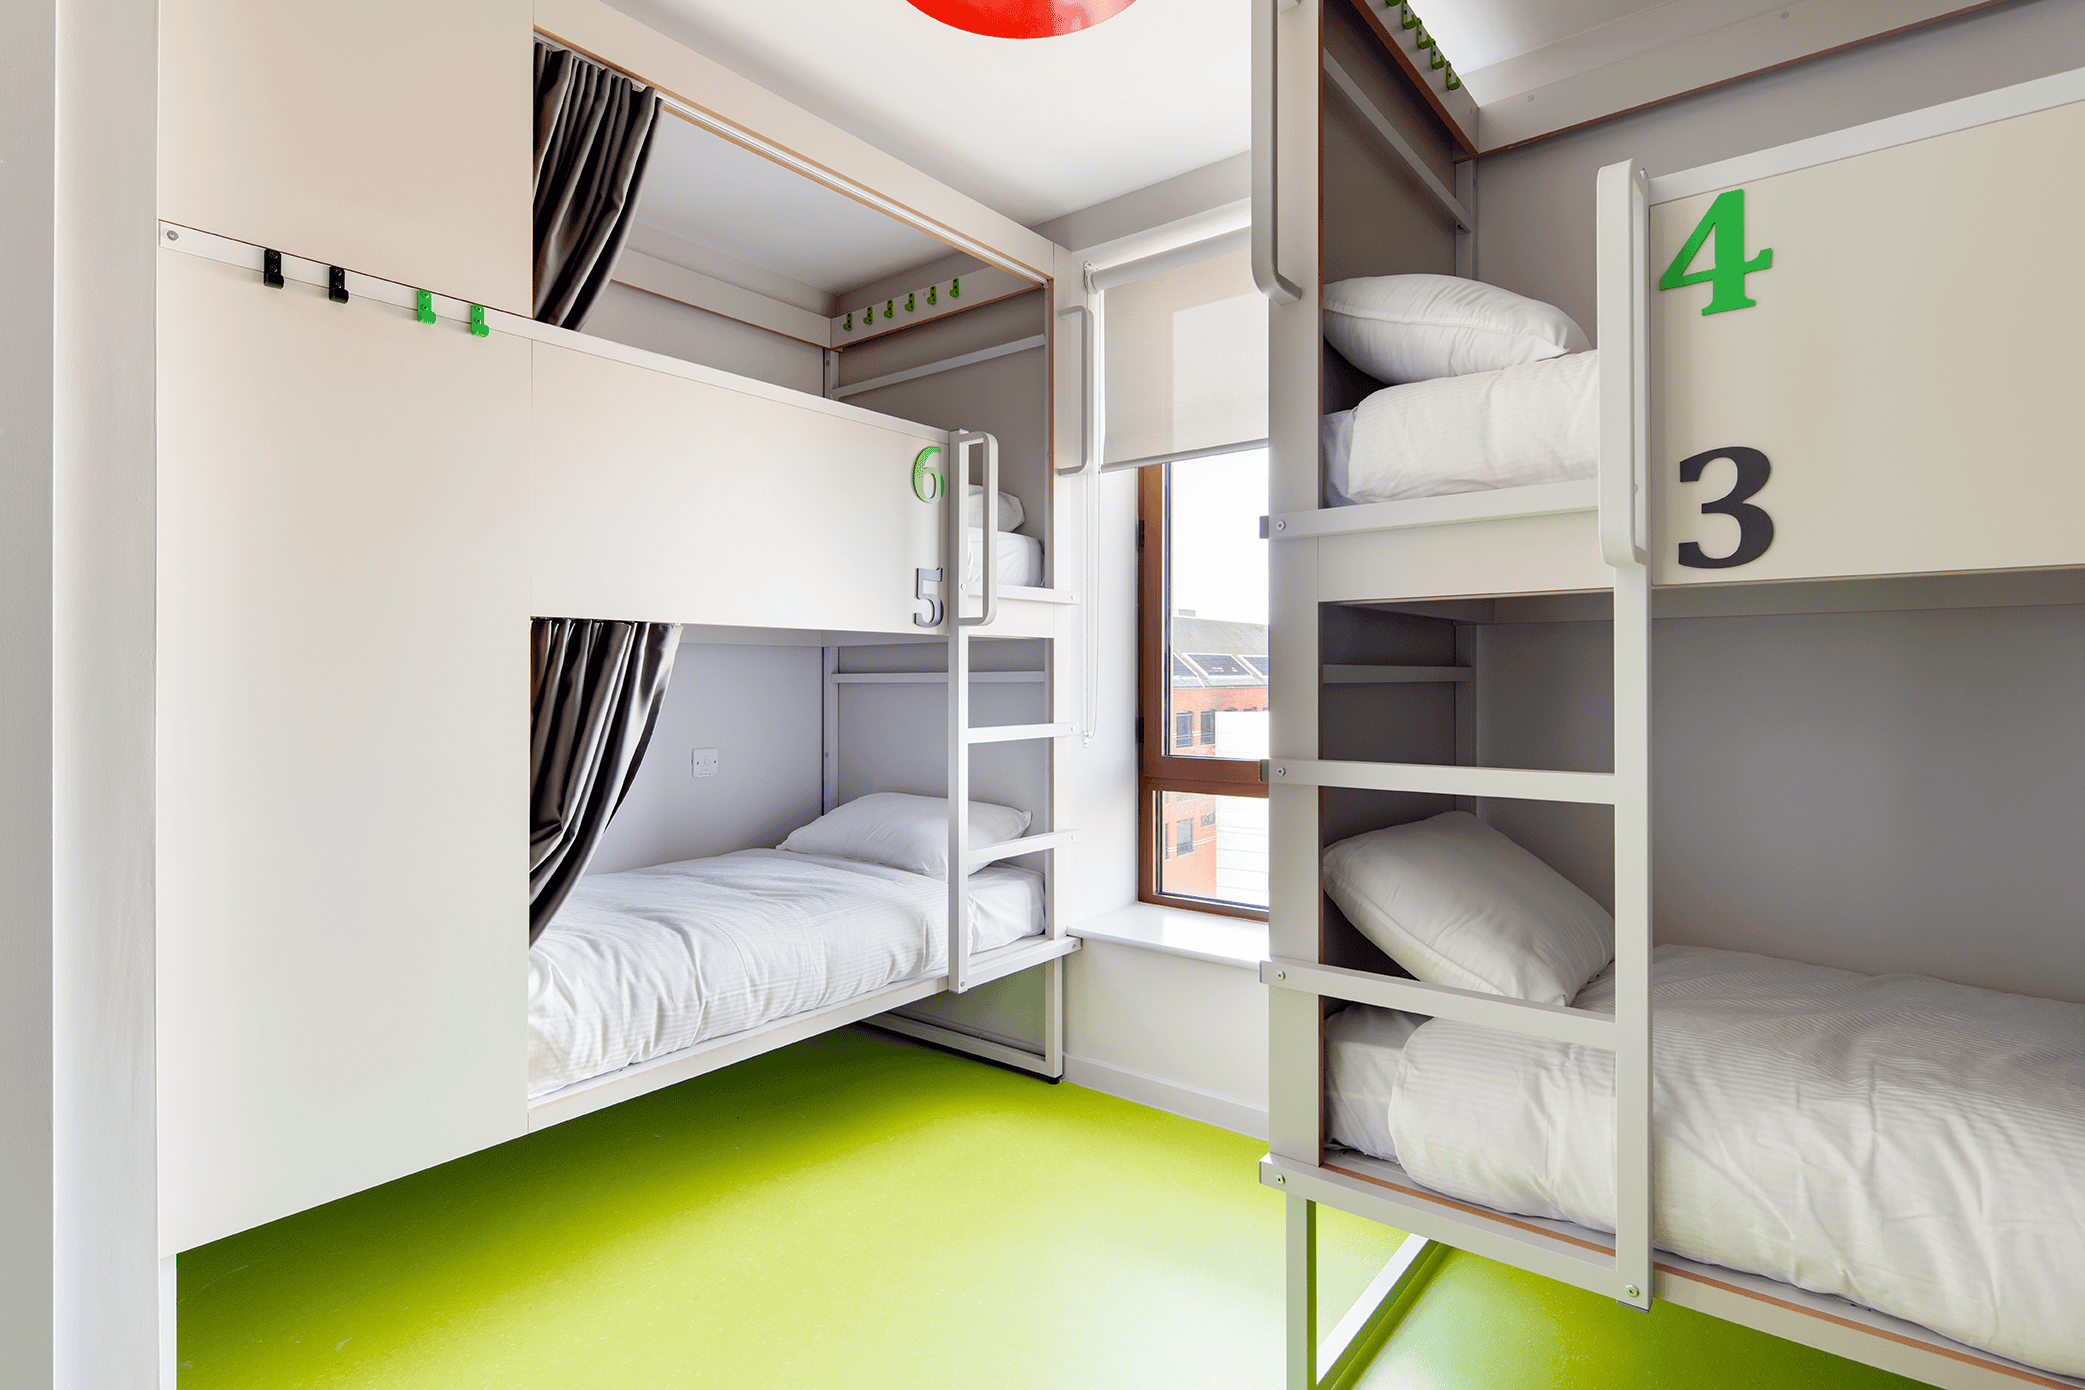 Clink i Lár group dorm room with bunk beds - Dublin hostel